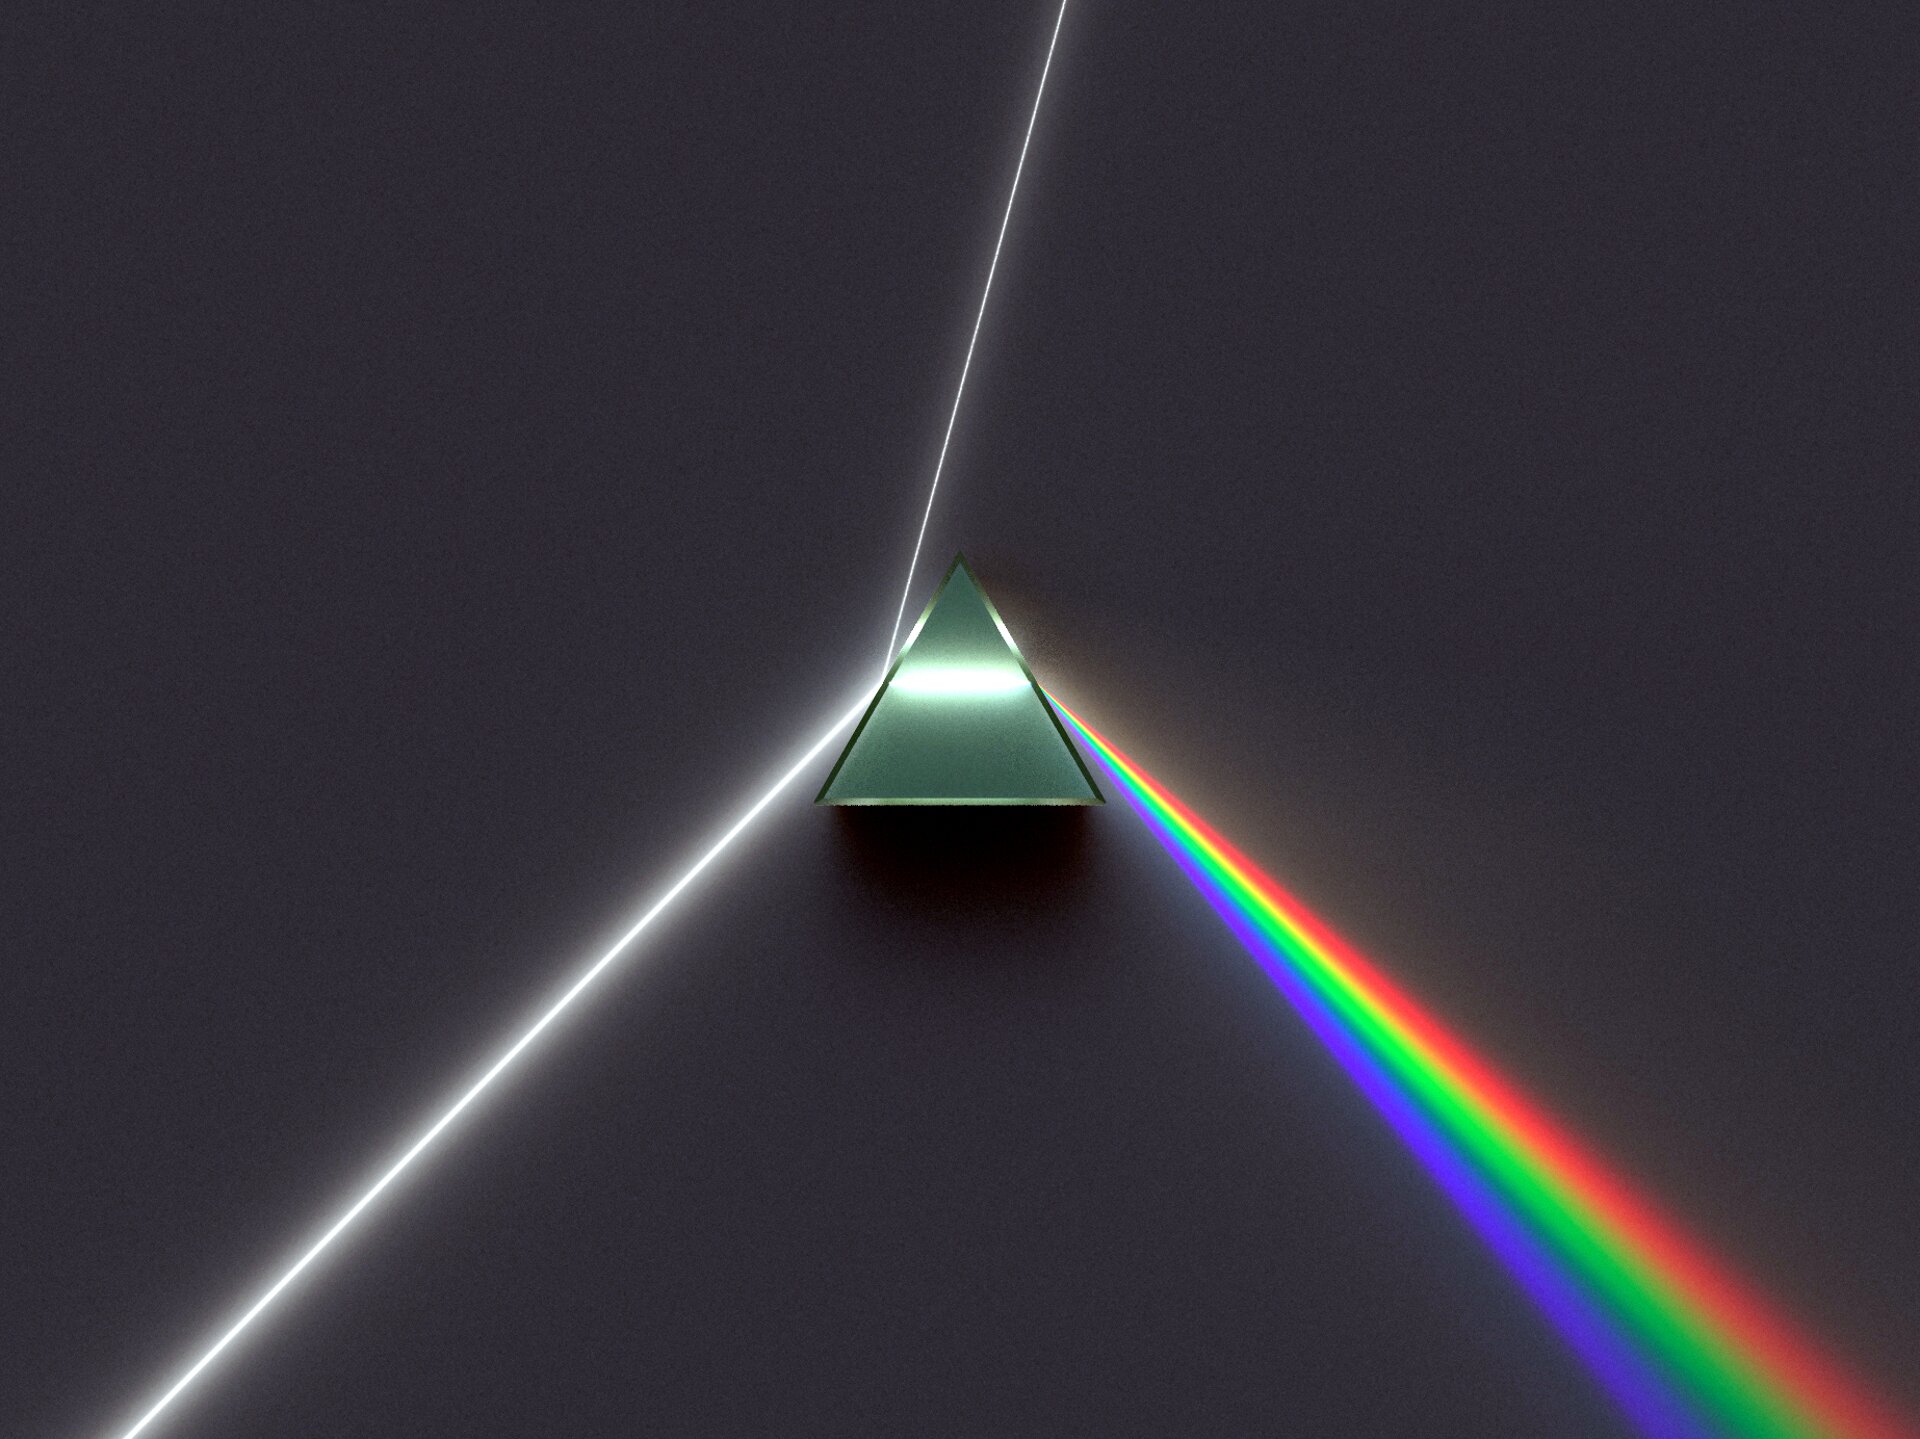 Zdjęcie pryzmatu trójkątnego i efektu rozszczepienia światła. Wiązka światła padająca na pryzmat częściowo odbija się, a częściowo przechodzi przez urządzenie (w środku widać biały promień, równoległy do podstawy), by z drugiej strony wyjść jako rozszczepiony, w postaci rozszerzającego się promienia o kolorach zmieniających się w poprzek niego (kolory tęczy - od najmocniej załamanego fioletowego, przez niebieski, zielony, żółty aż po najsłabiej załamanego, czerwonego).